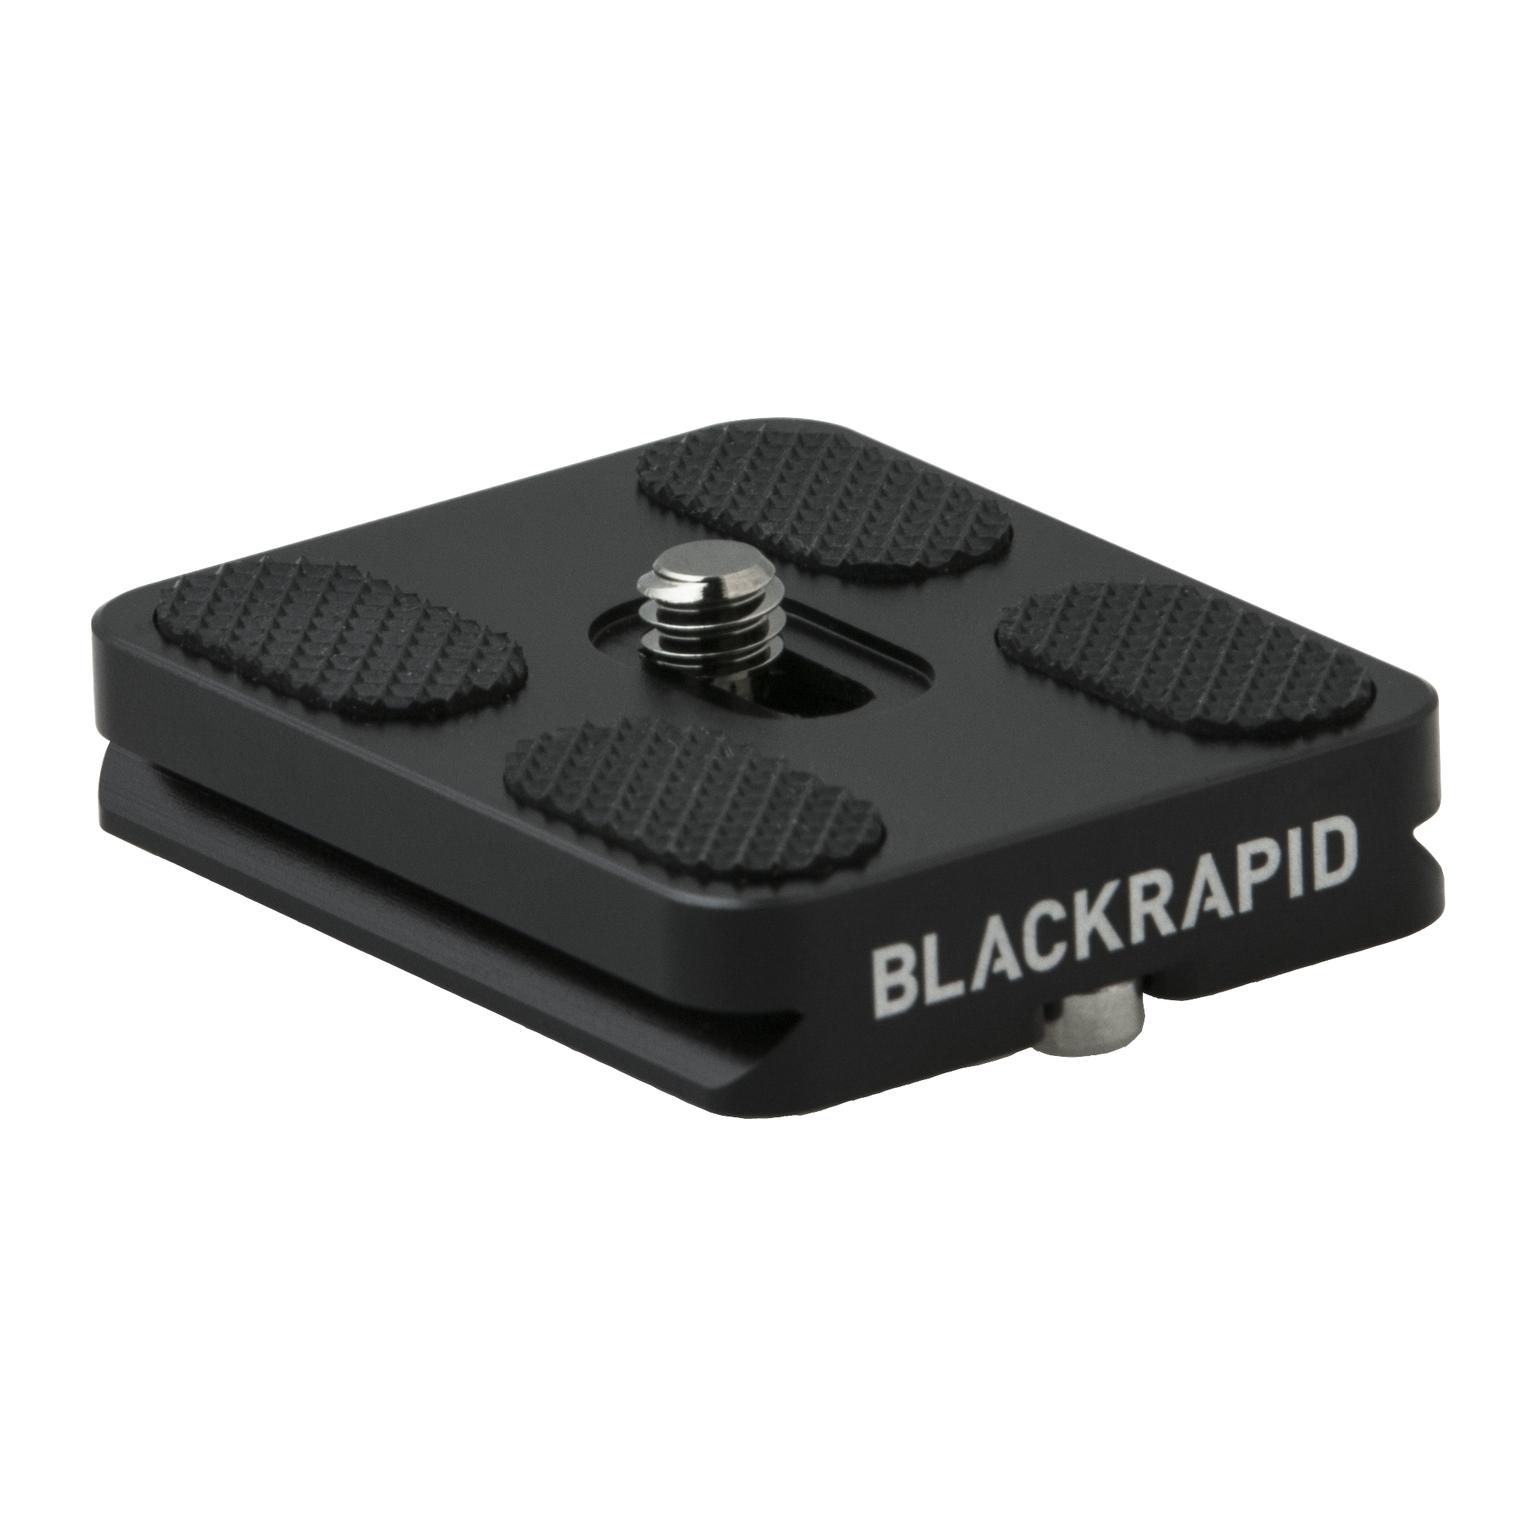 Black Rapid Arca-Compatible Tripod Plate 50mm, tripods plates, Black Rapid - Pictureline  - 1